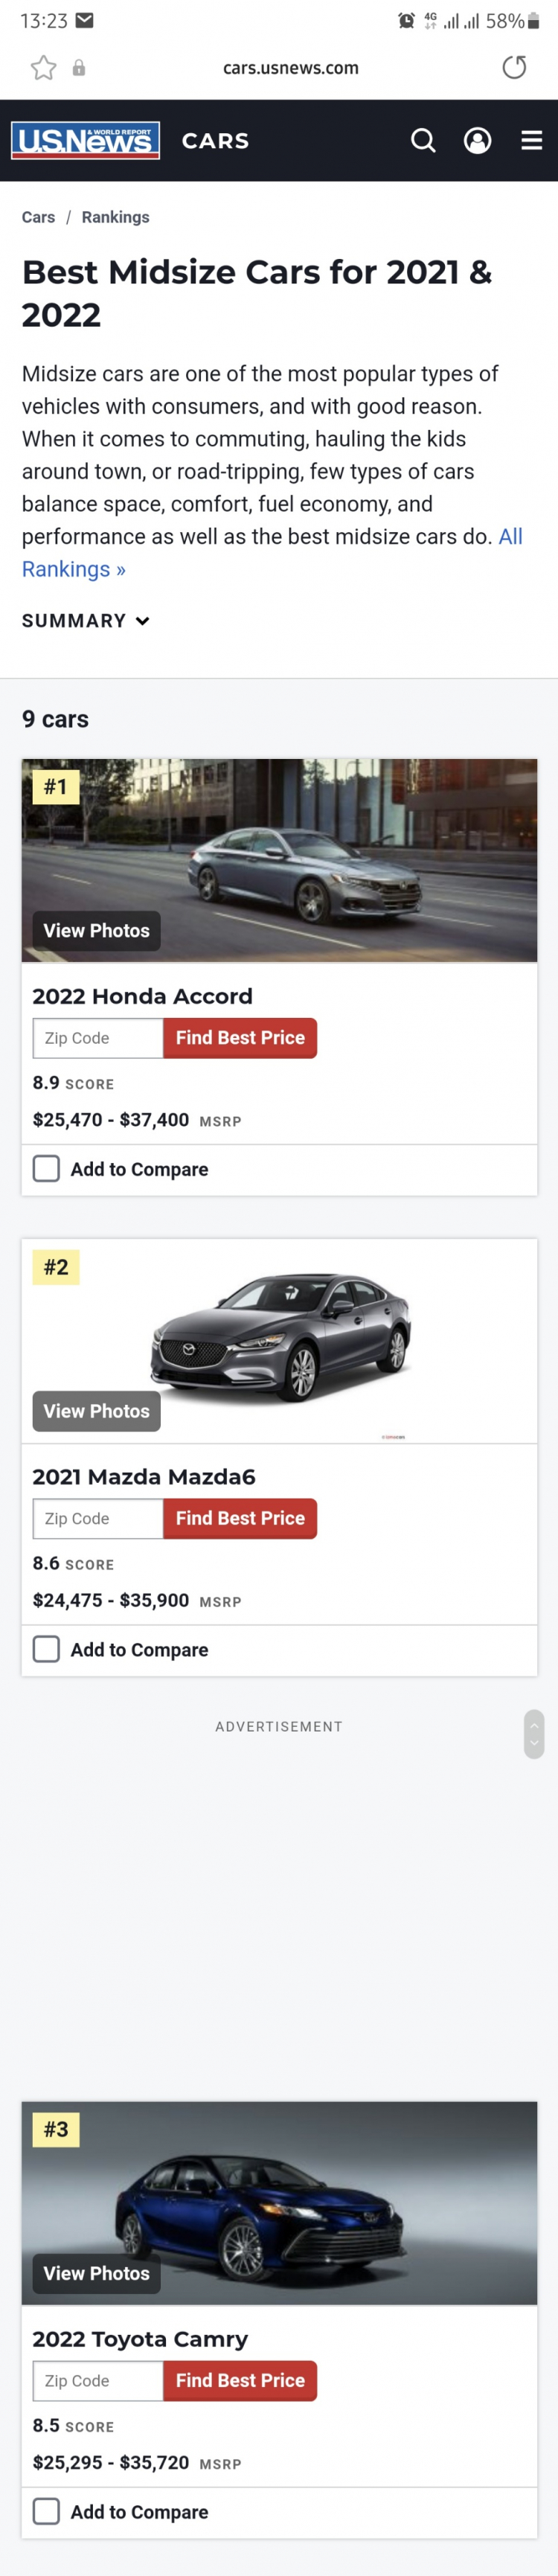 Giá cao hơn cả Mazda6 bản full, Toyota Camry 2.0Q giá 1,167 tỷ đồng được trang bị ra sao?